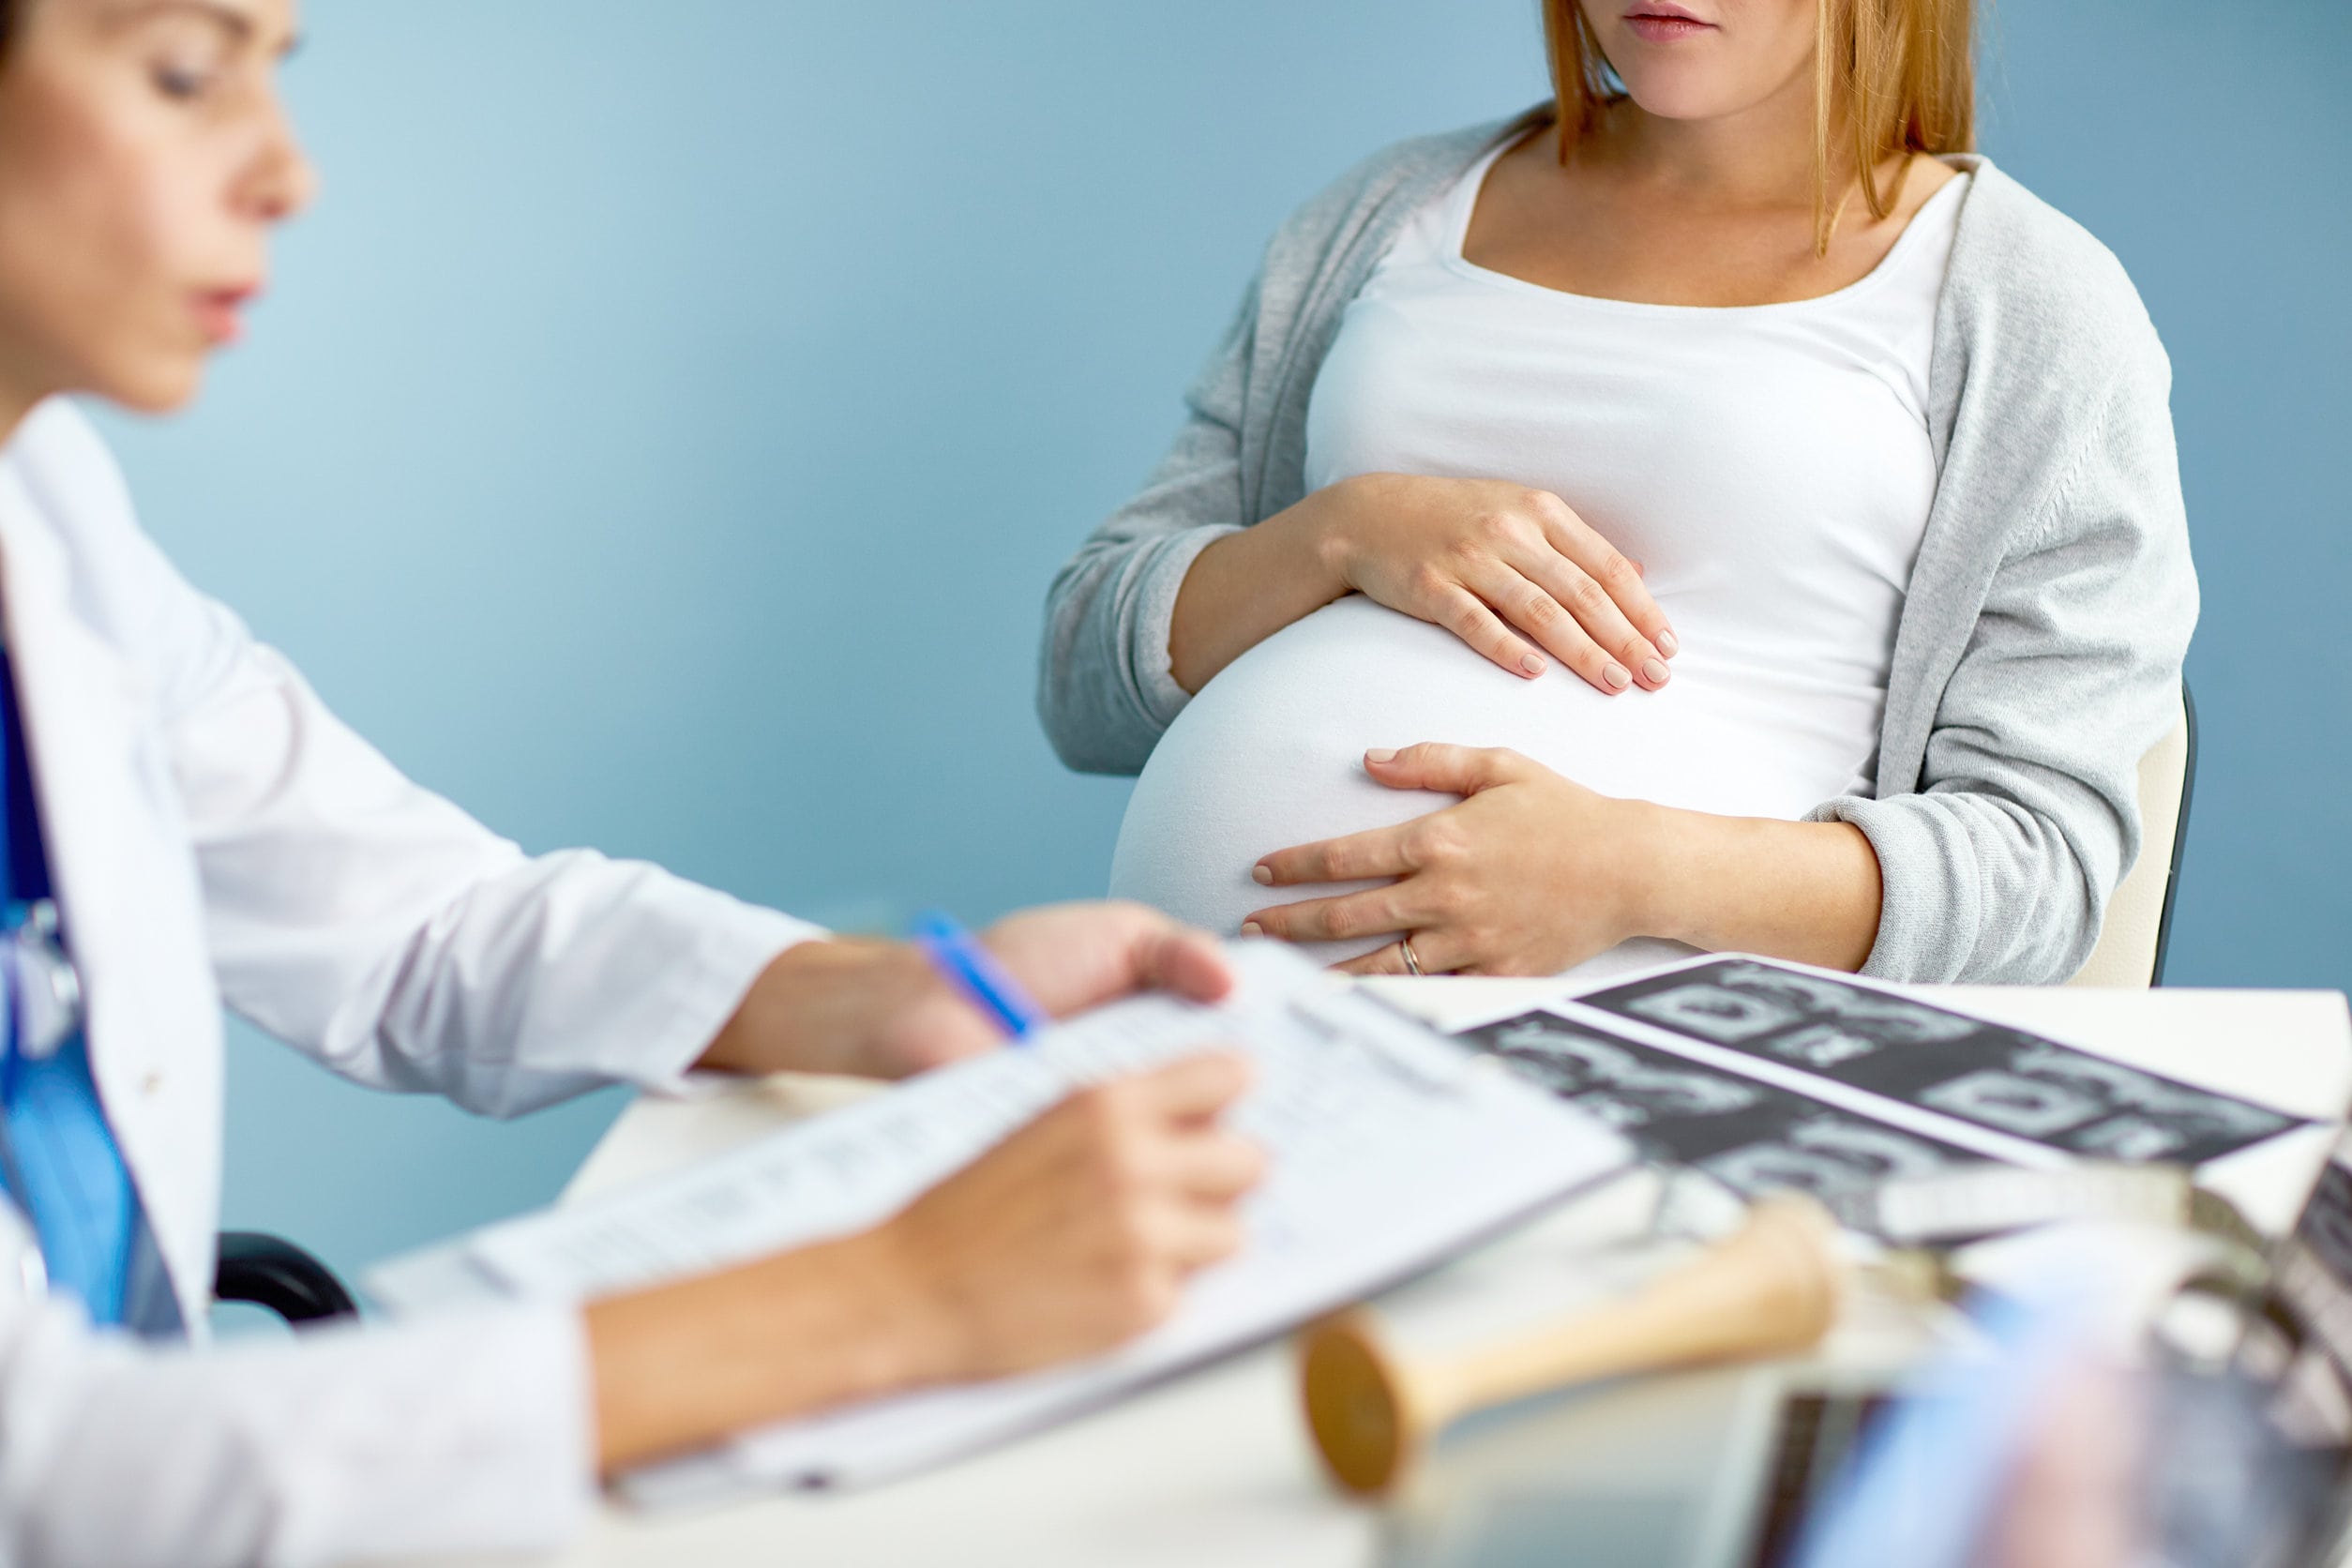 Bloedverlies zwangerschap eerste trimester; kan het kwaad als je 5 / 6 weken zwanger bent? Wat is kans op miskraam en wat moet je doen? - Mamaliefde.nl